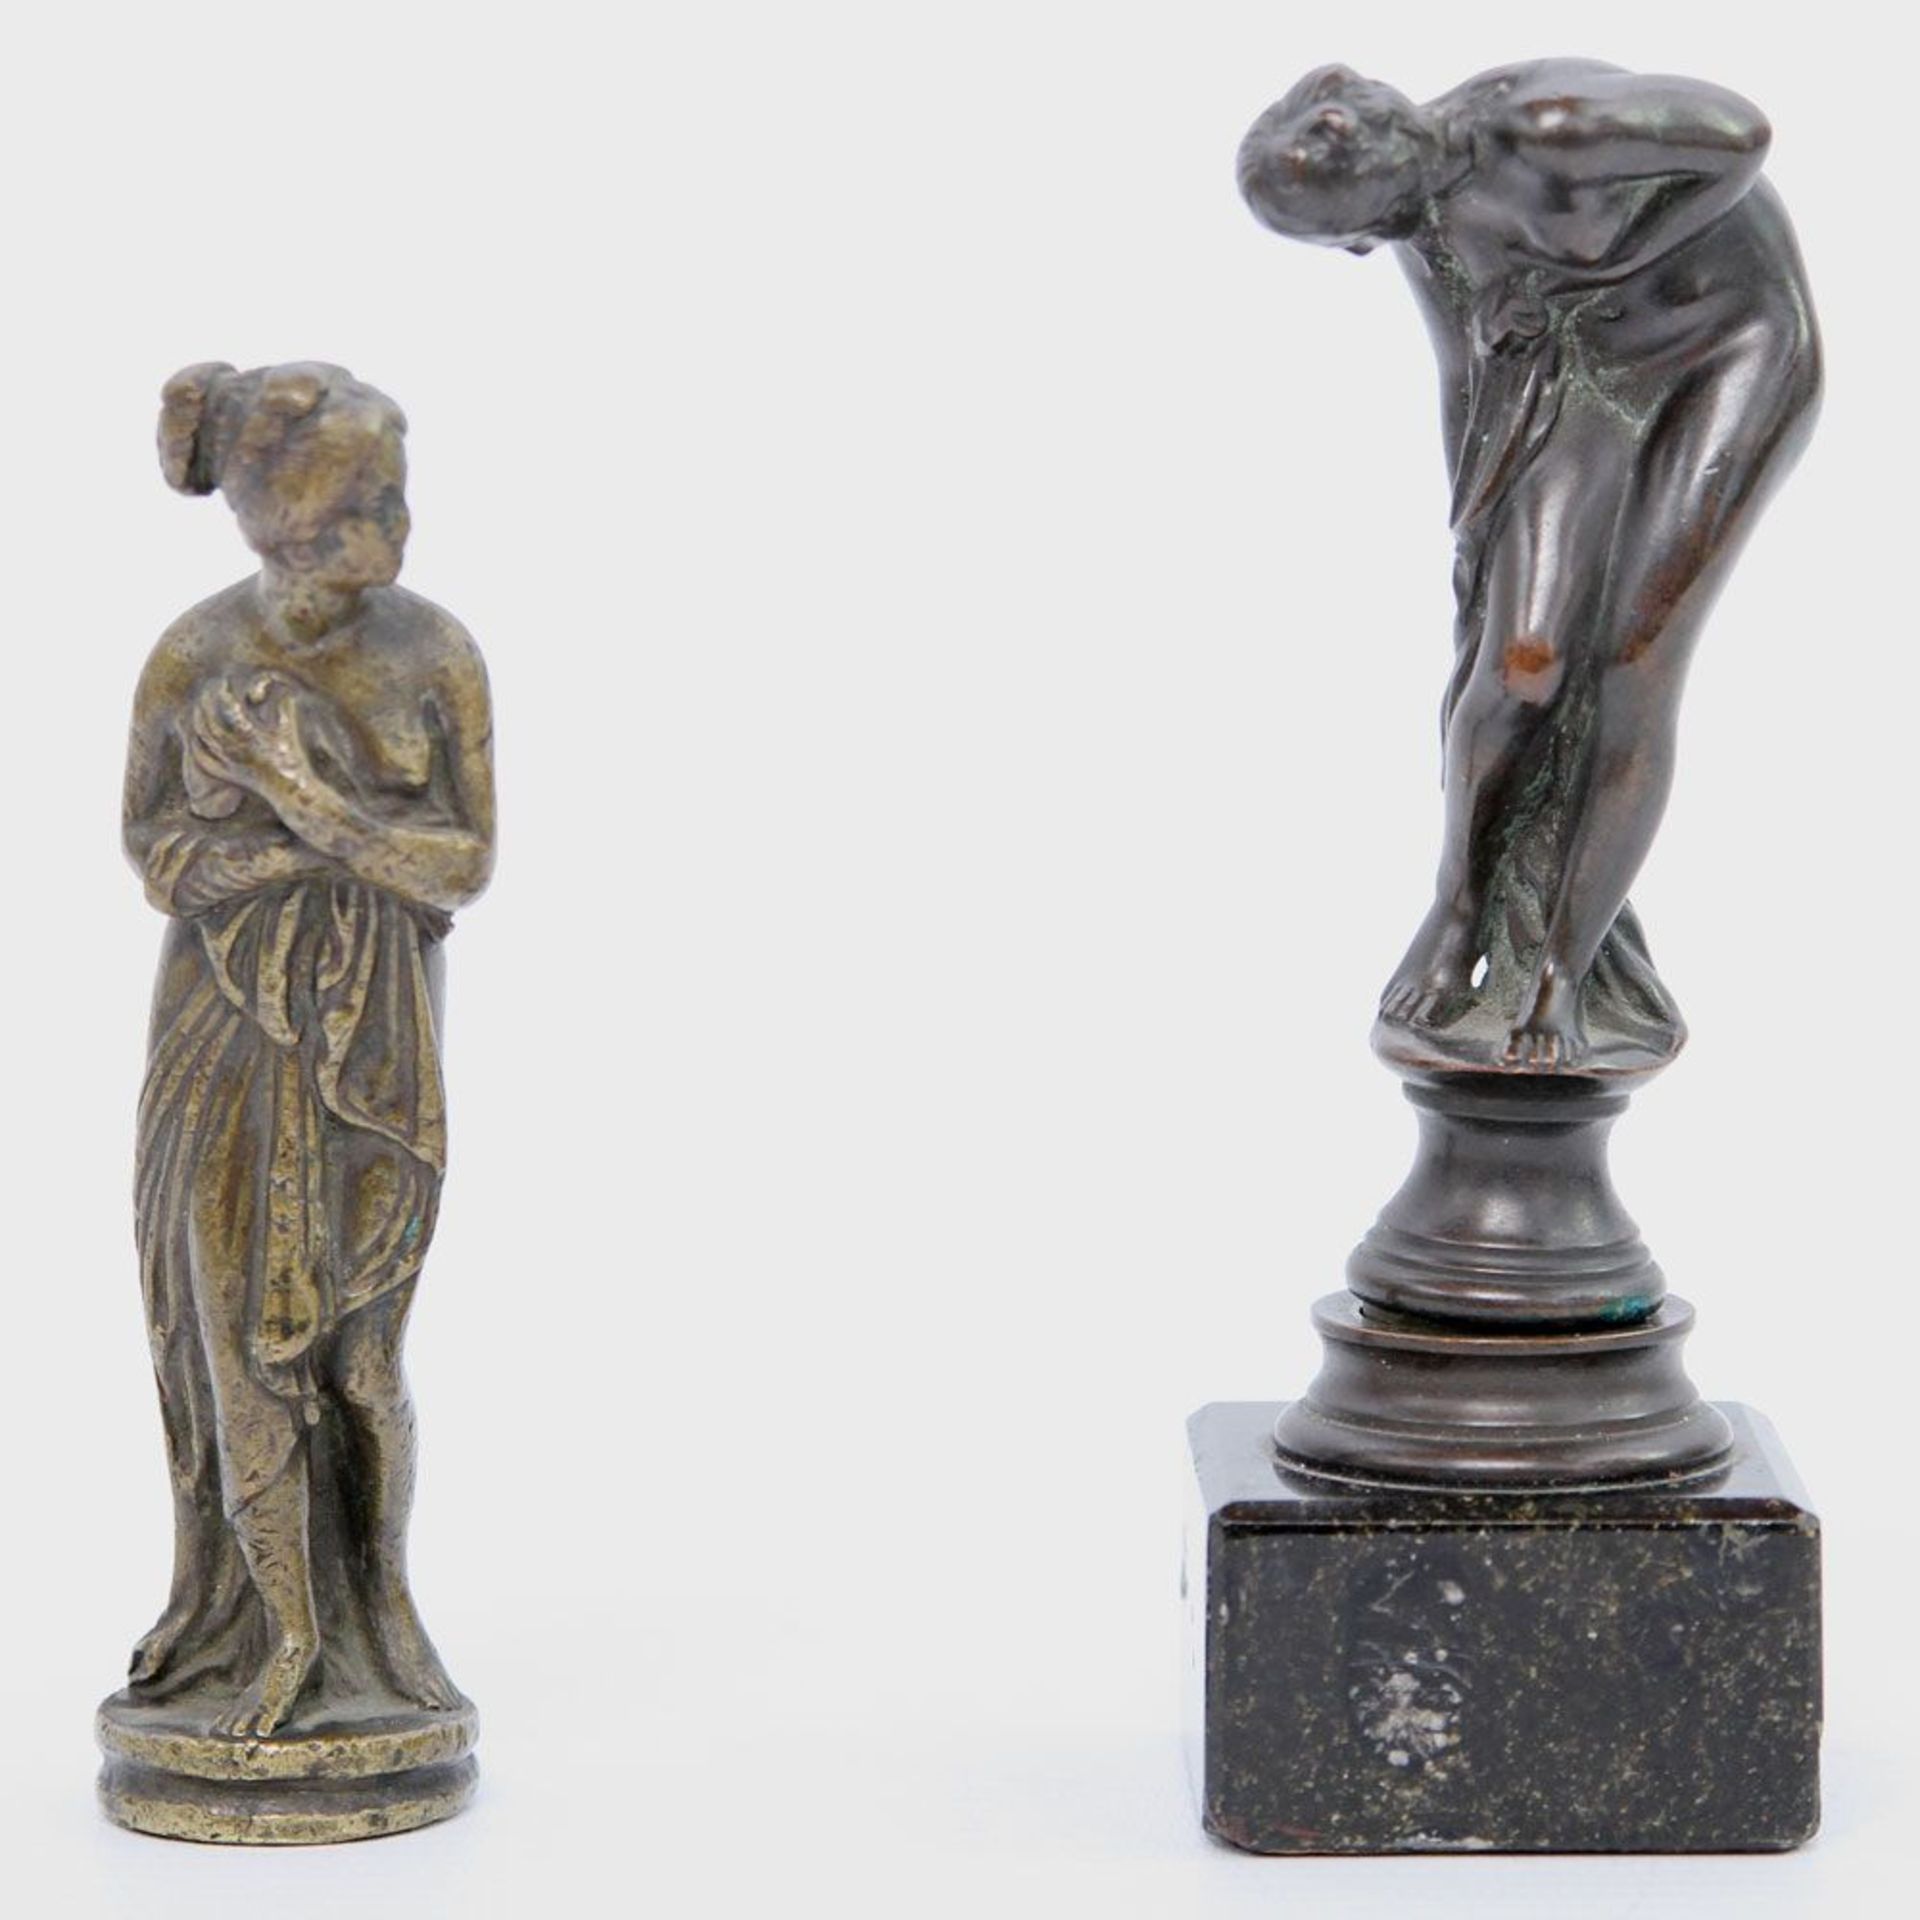 Opening: 25 EUR        Zwei kleine Skulpturen "Venus im Bad", 20. Jh. Metall/ wohl Bronze. Eine